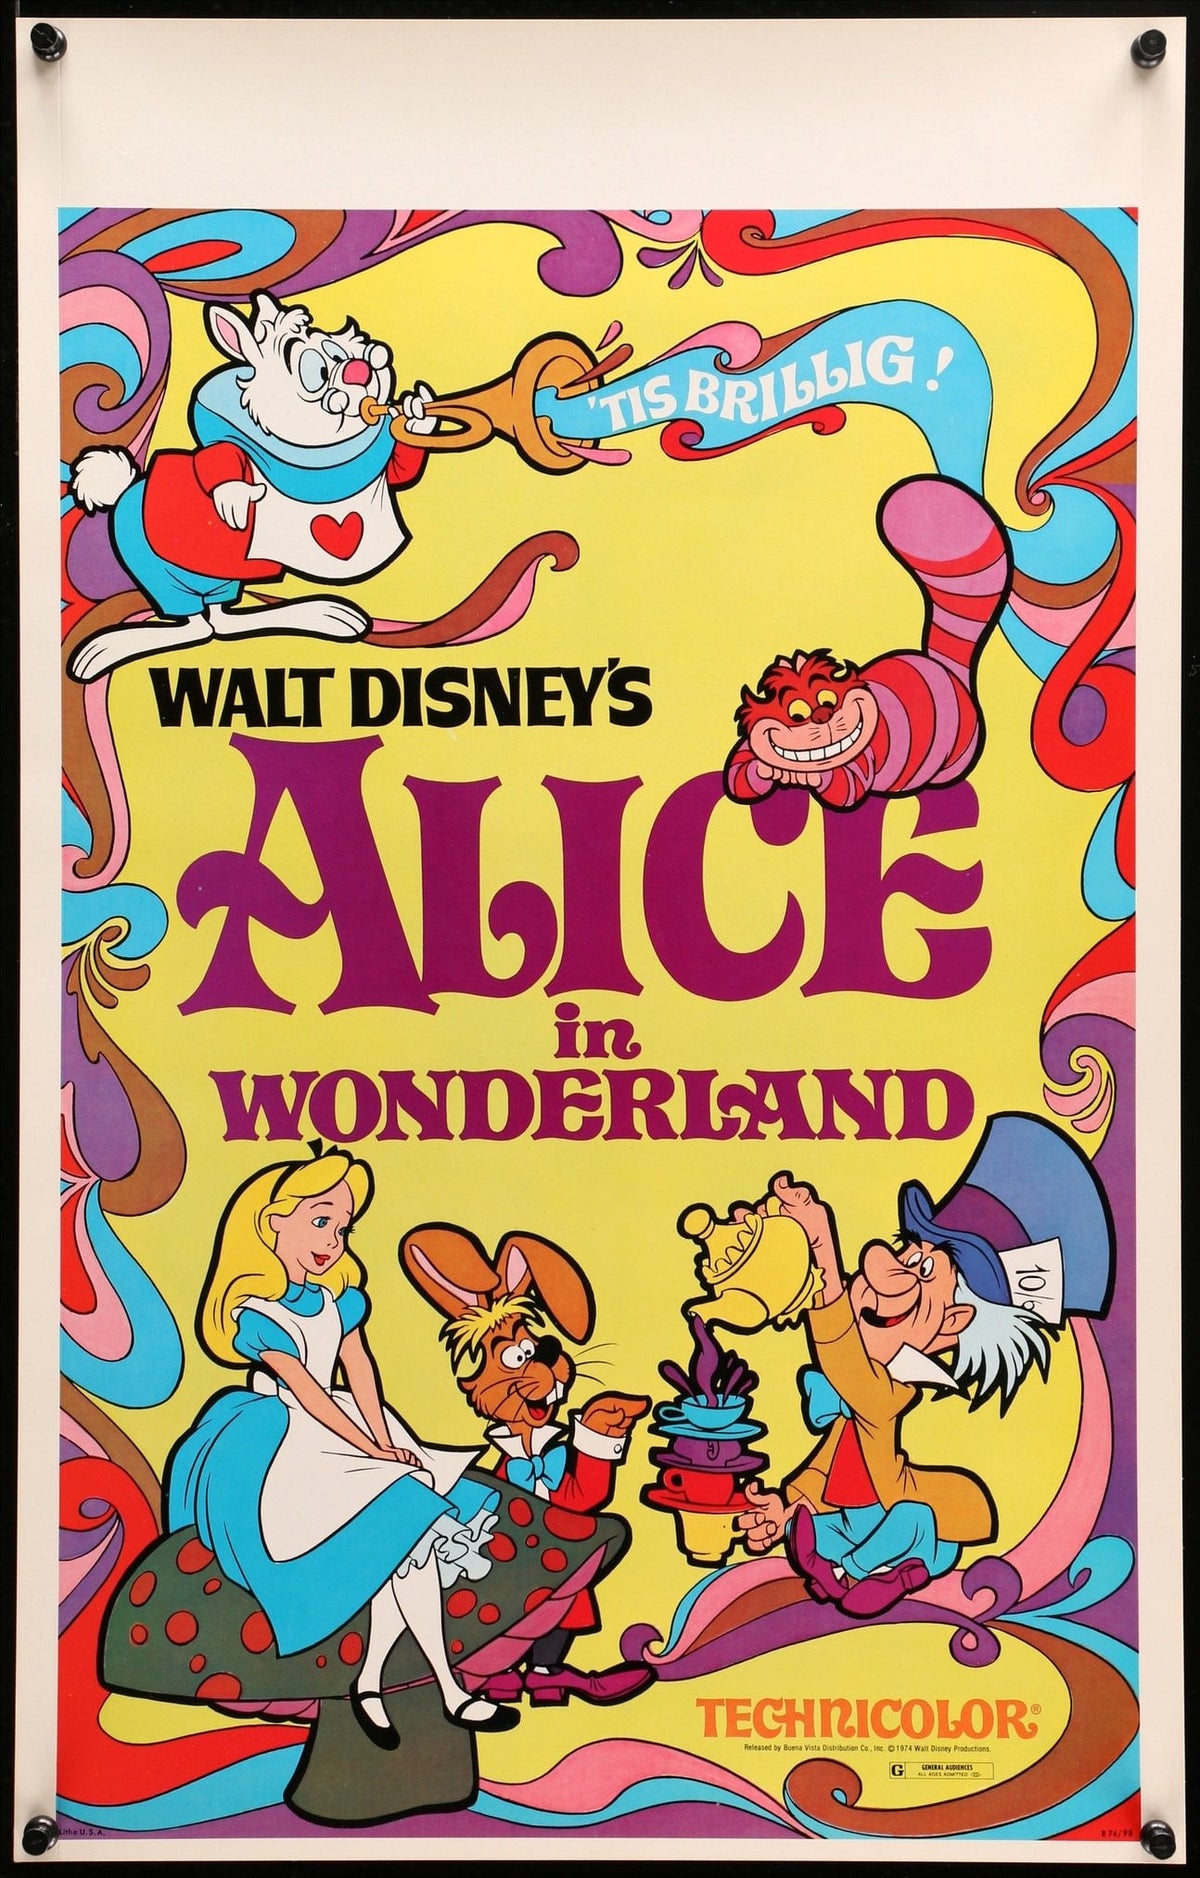 Alice in Wonderland (1951) - IMDb